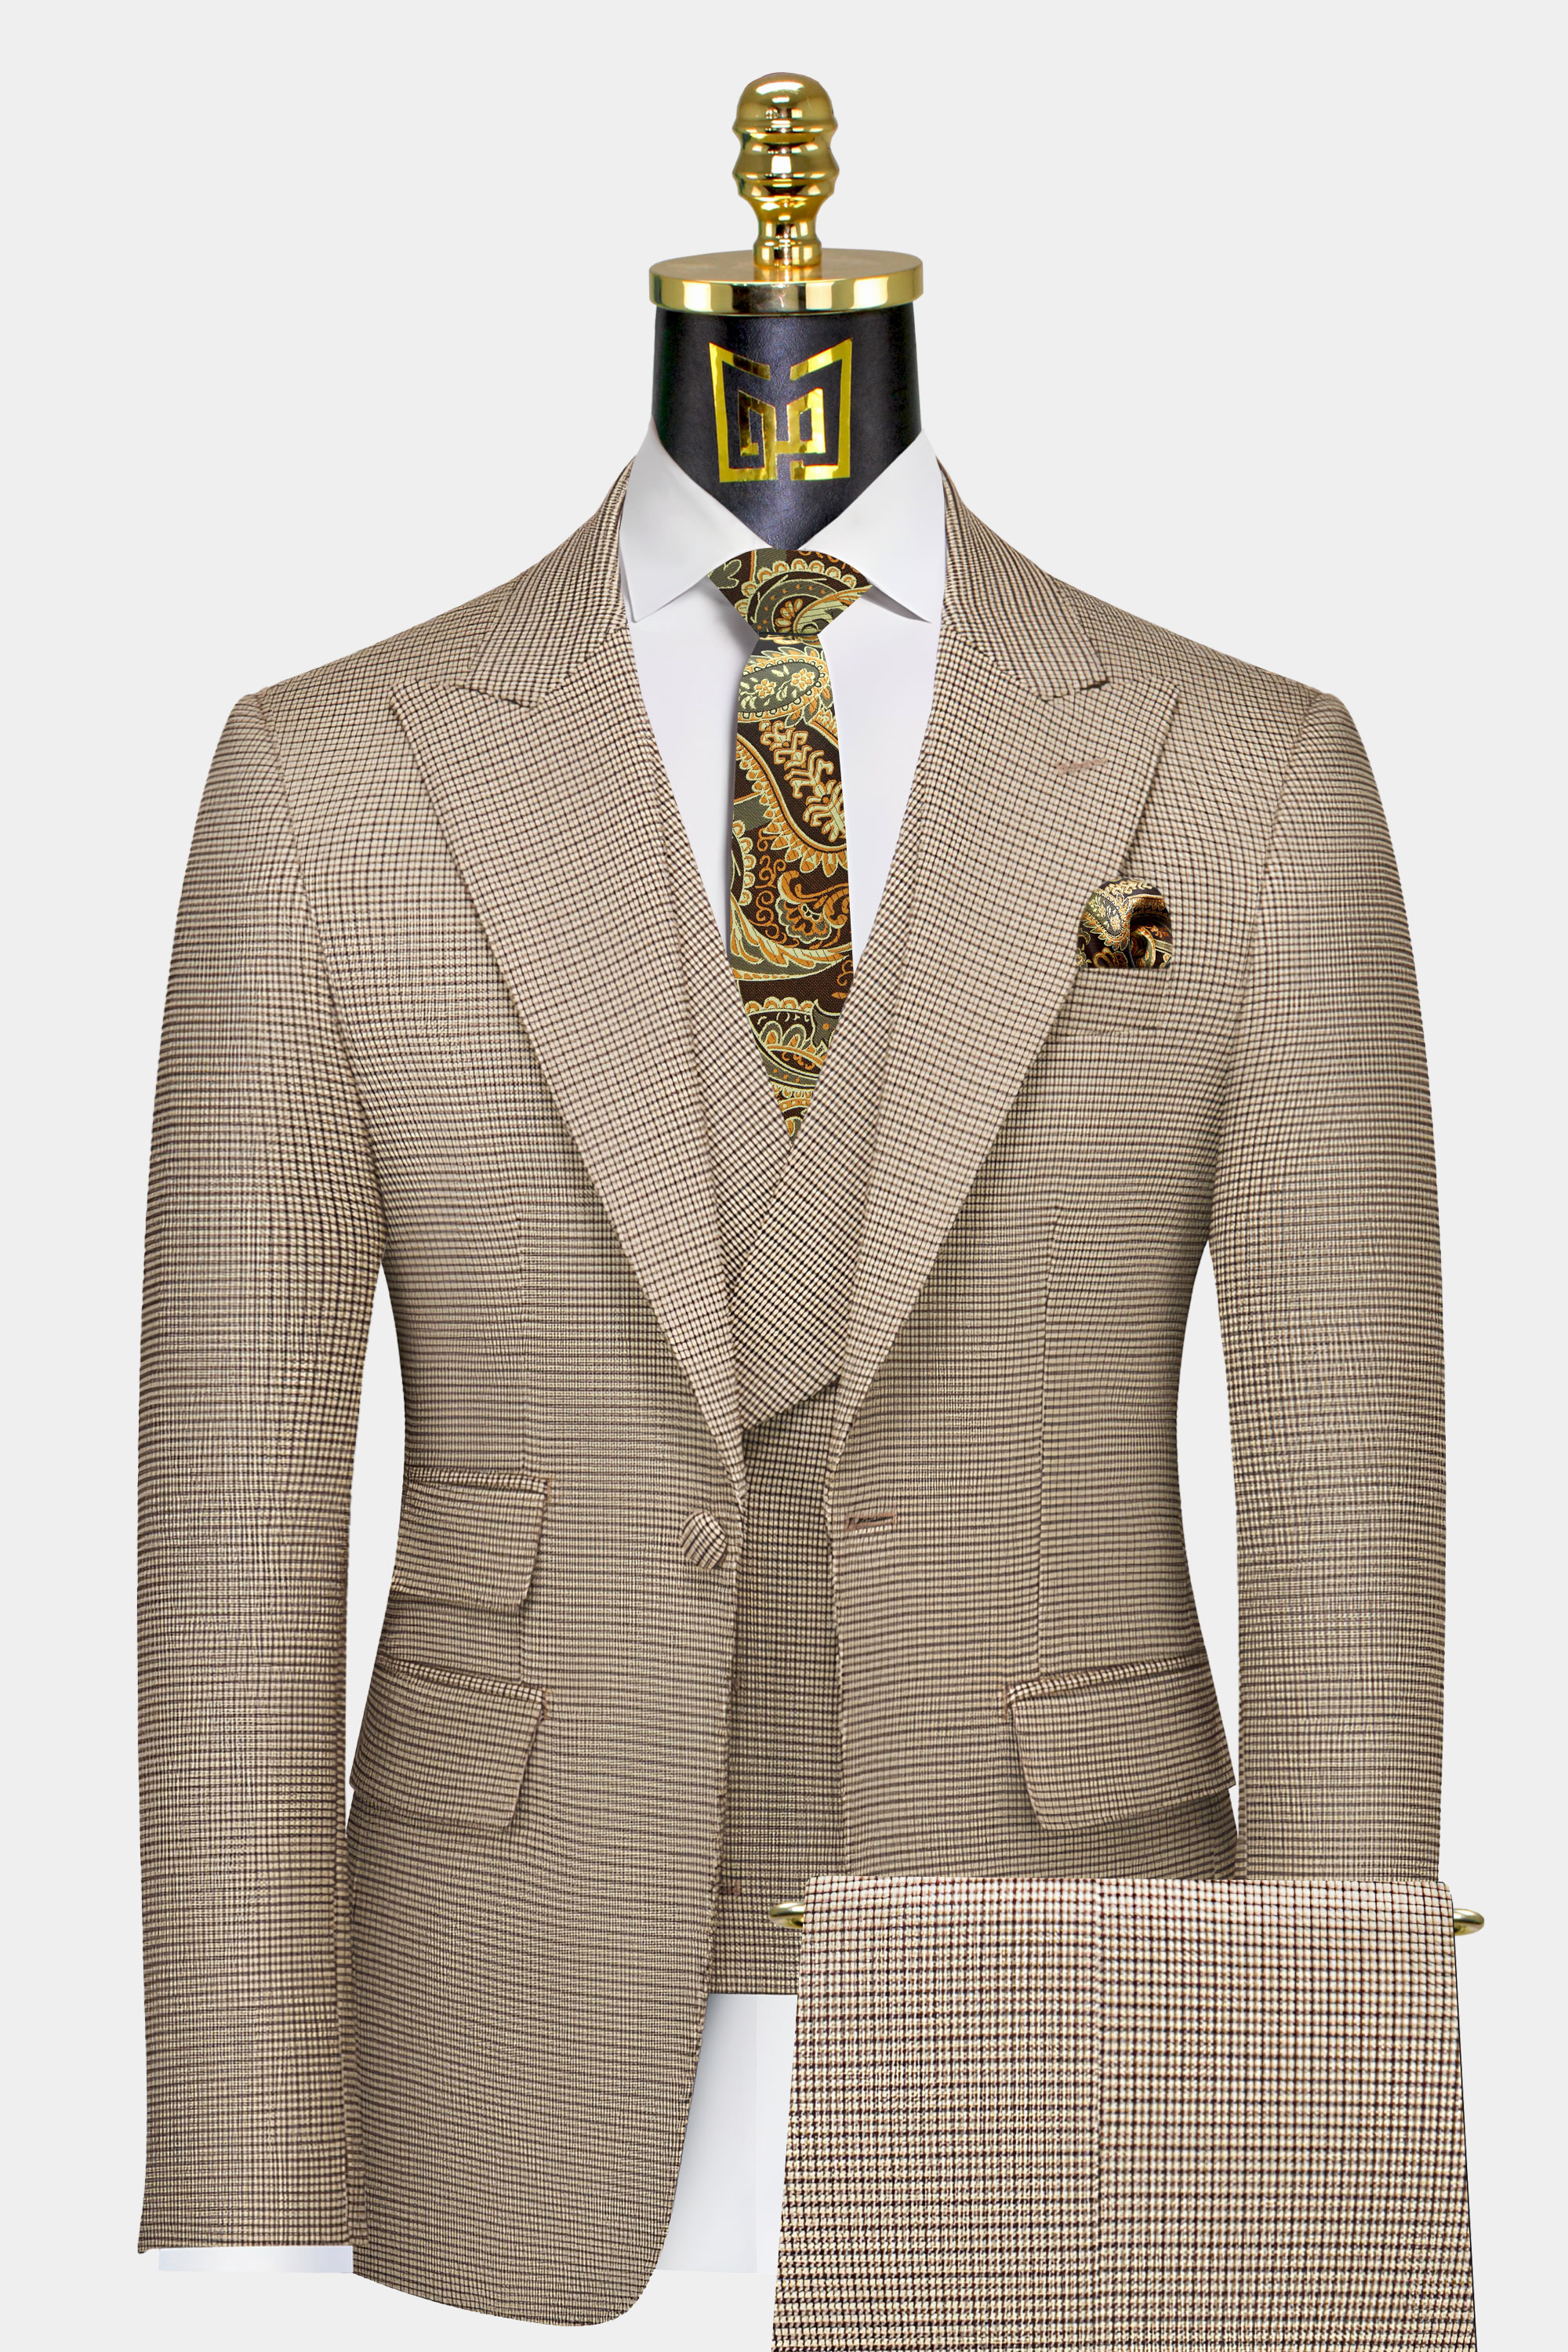 Khaki-Houndstooth-Suit-Rustic-Wedding-Groom-Tuxedo-Suit-from-Gentlemansguru.com